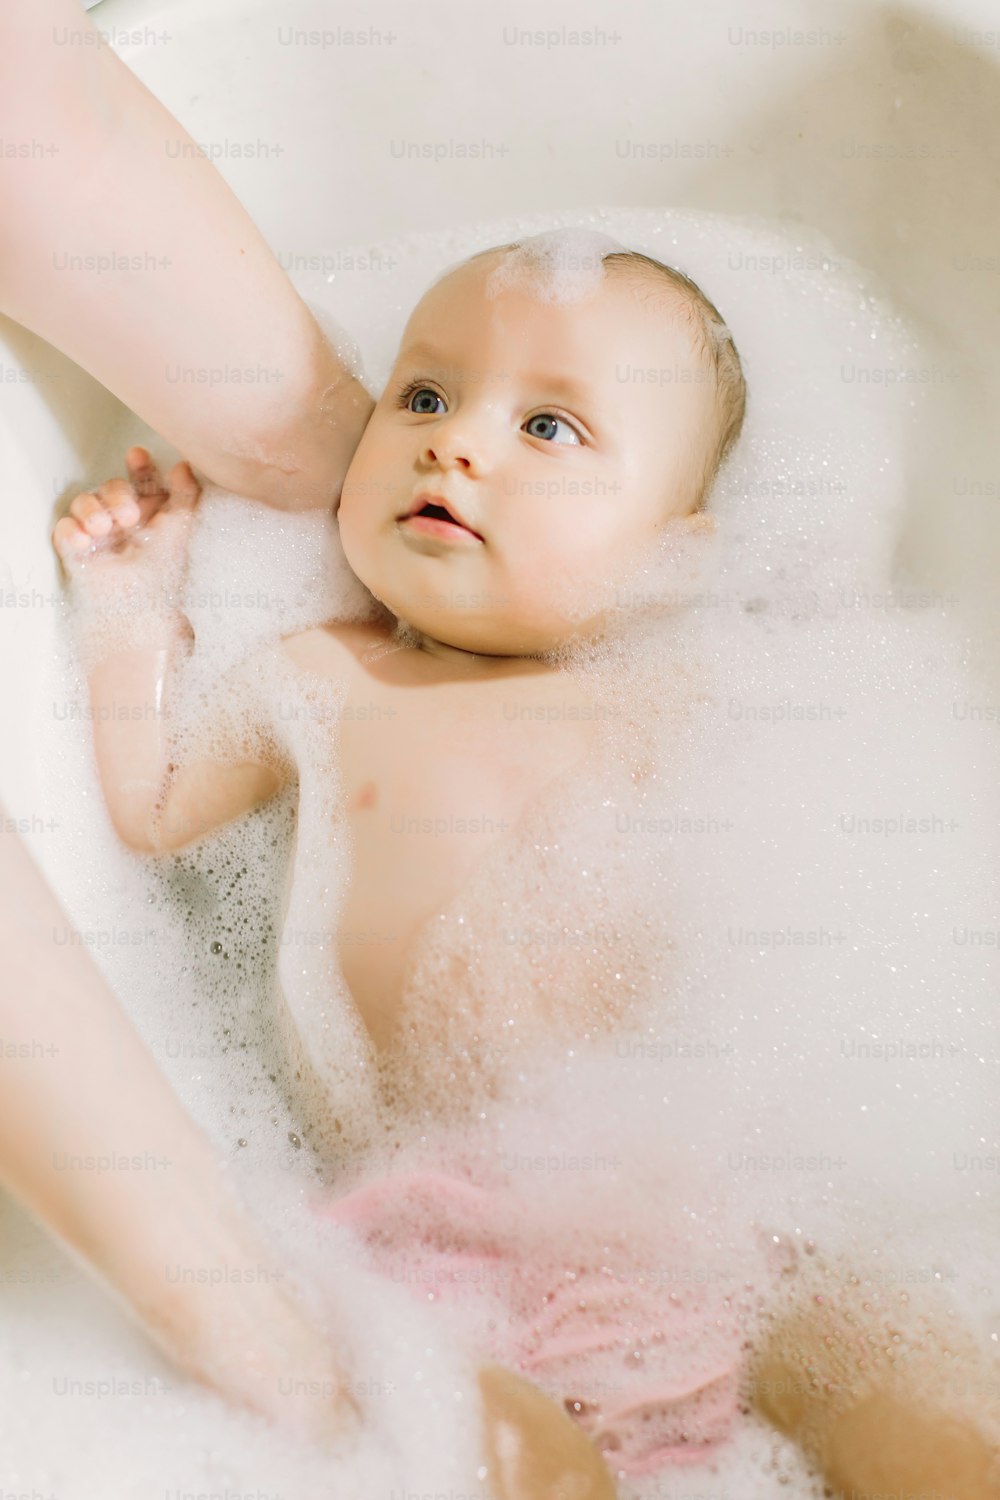 거품 거품을 가지고 노는 목욕을 하는 행복한 웃는 아기. 욕조에 있는 어린 아이. 유아 씻기 및 목욕. 어린 아이들을위한 위생 및 보살핌. 신생아 목욕